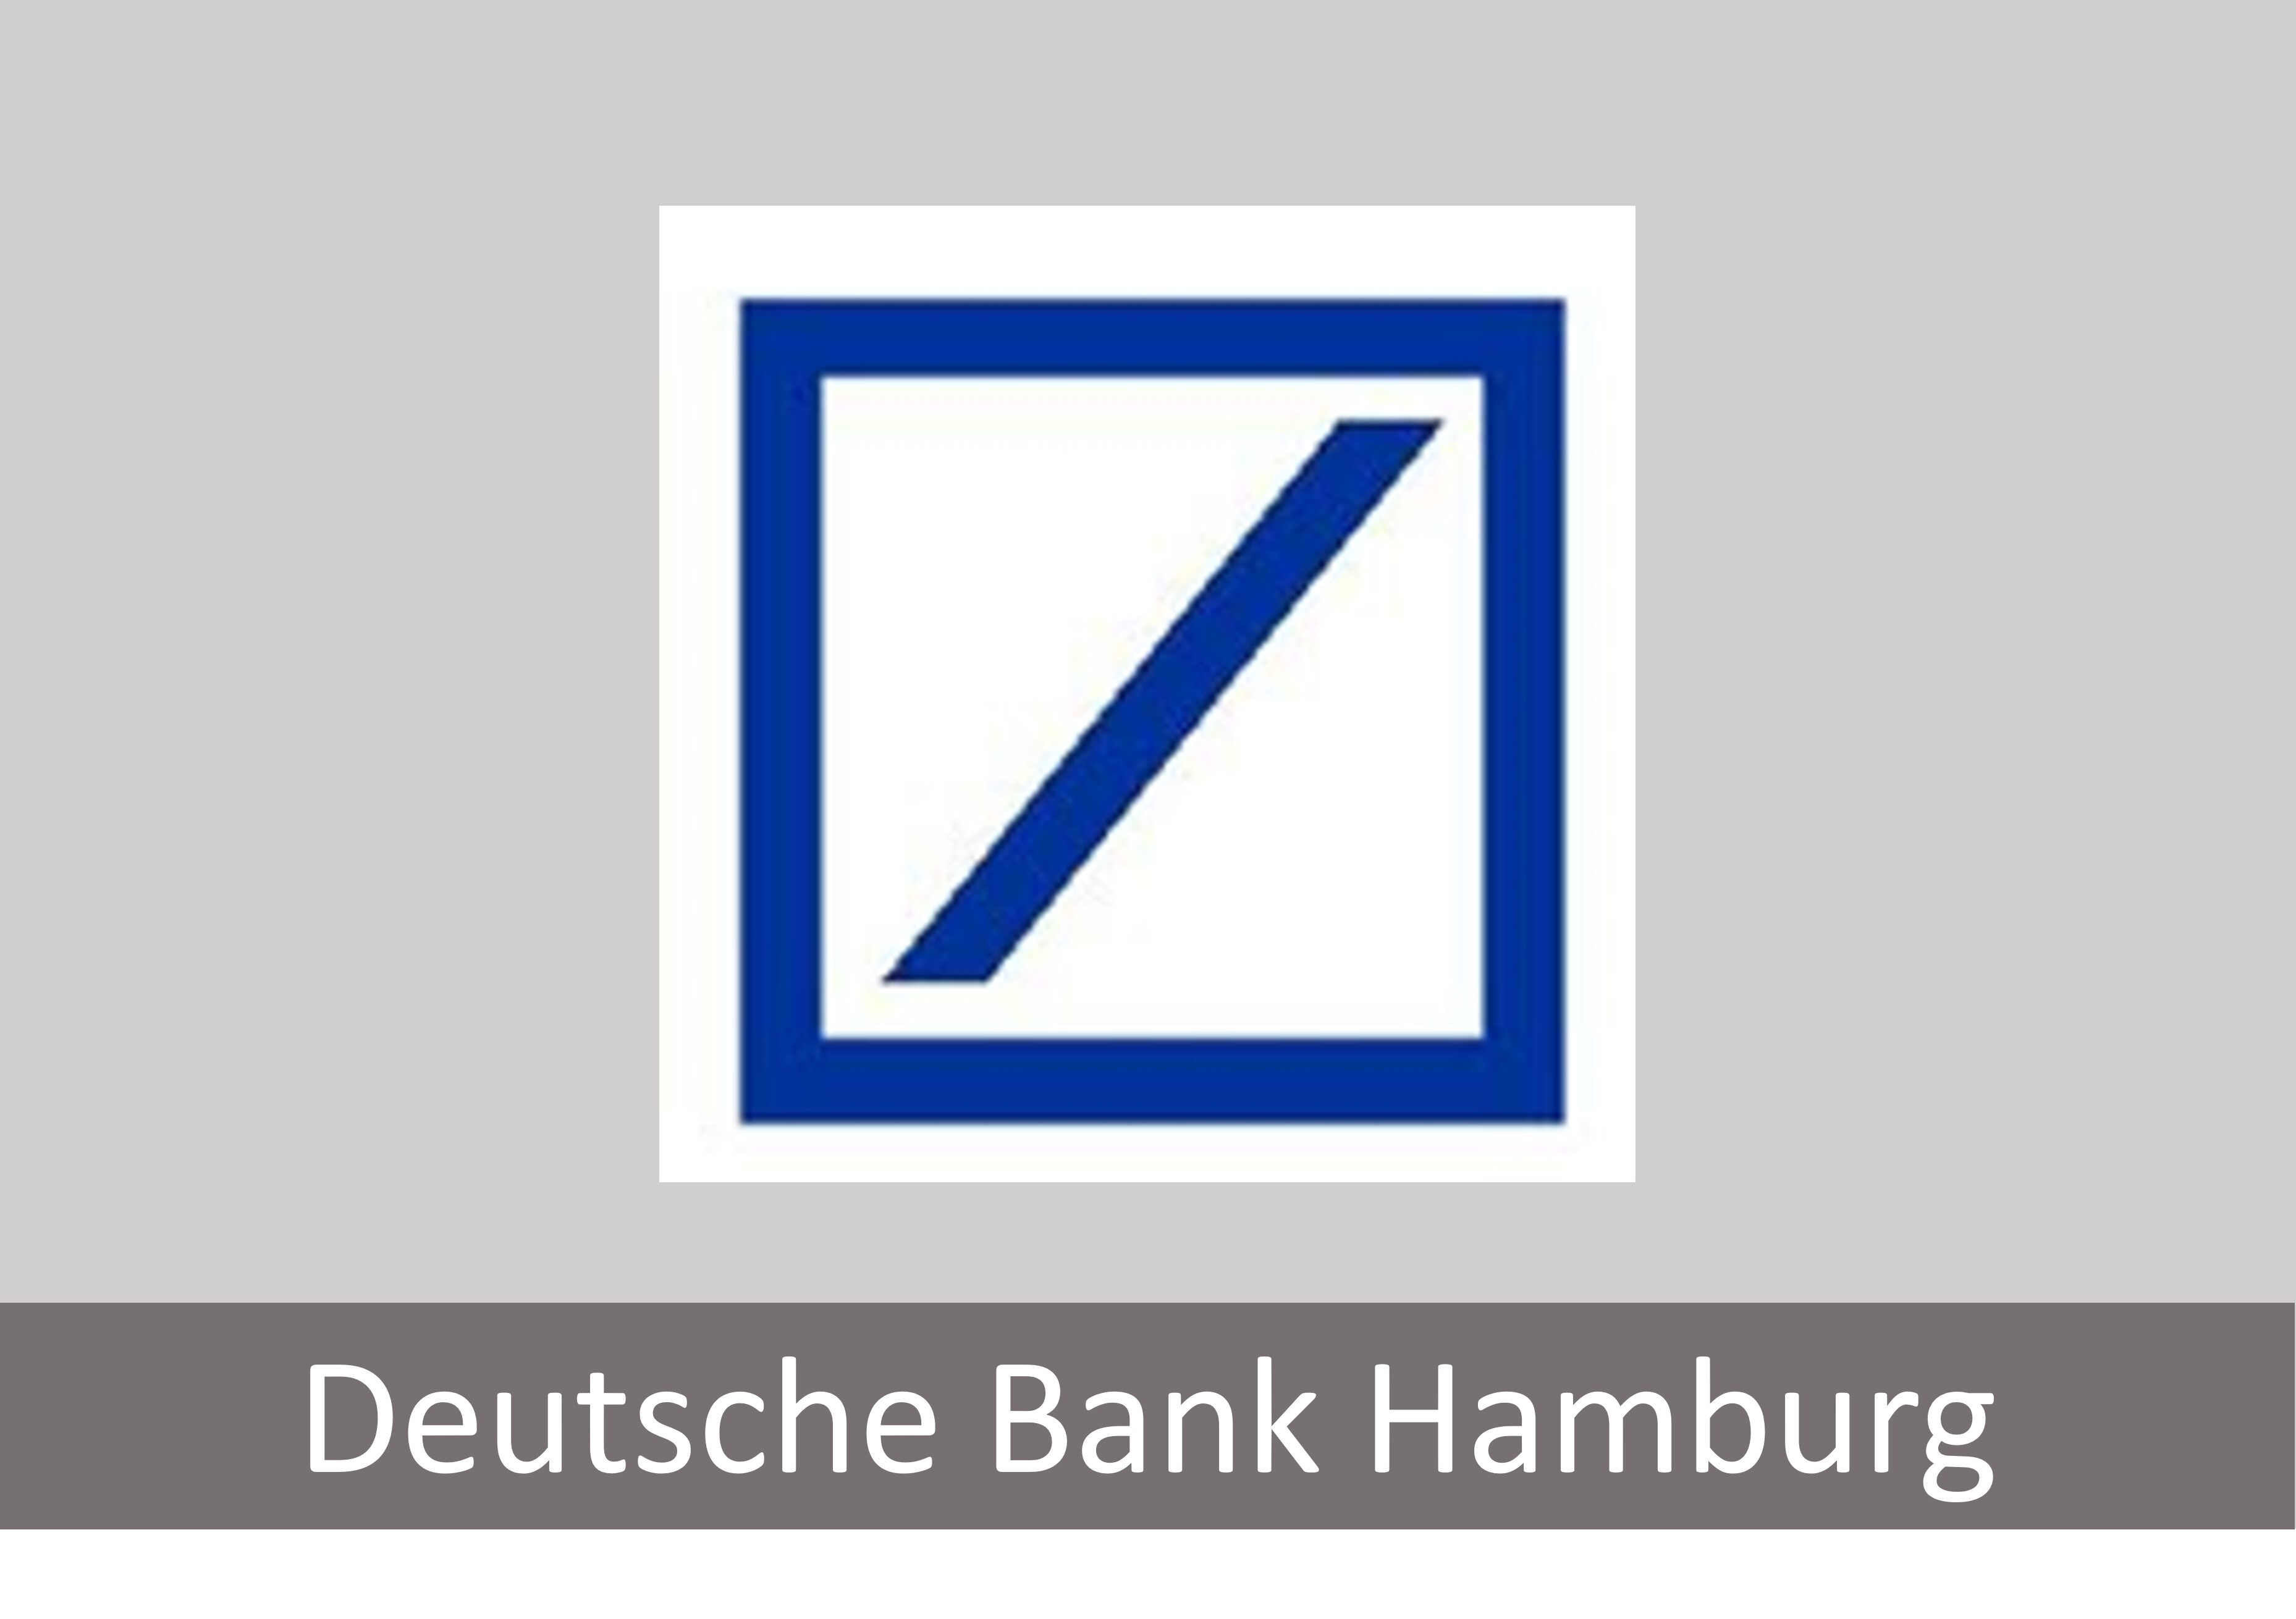 Deutsche Bank Hamburg.jpg